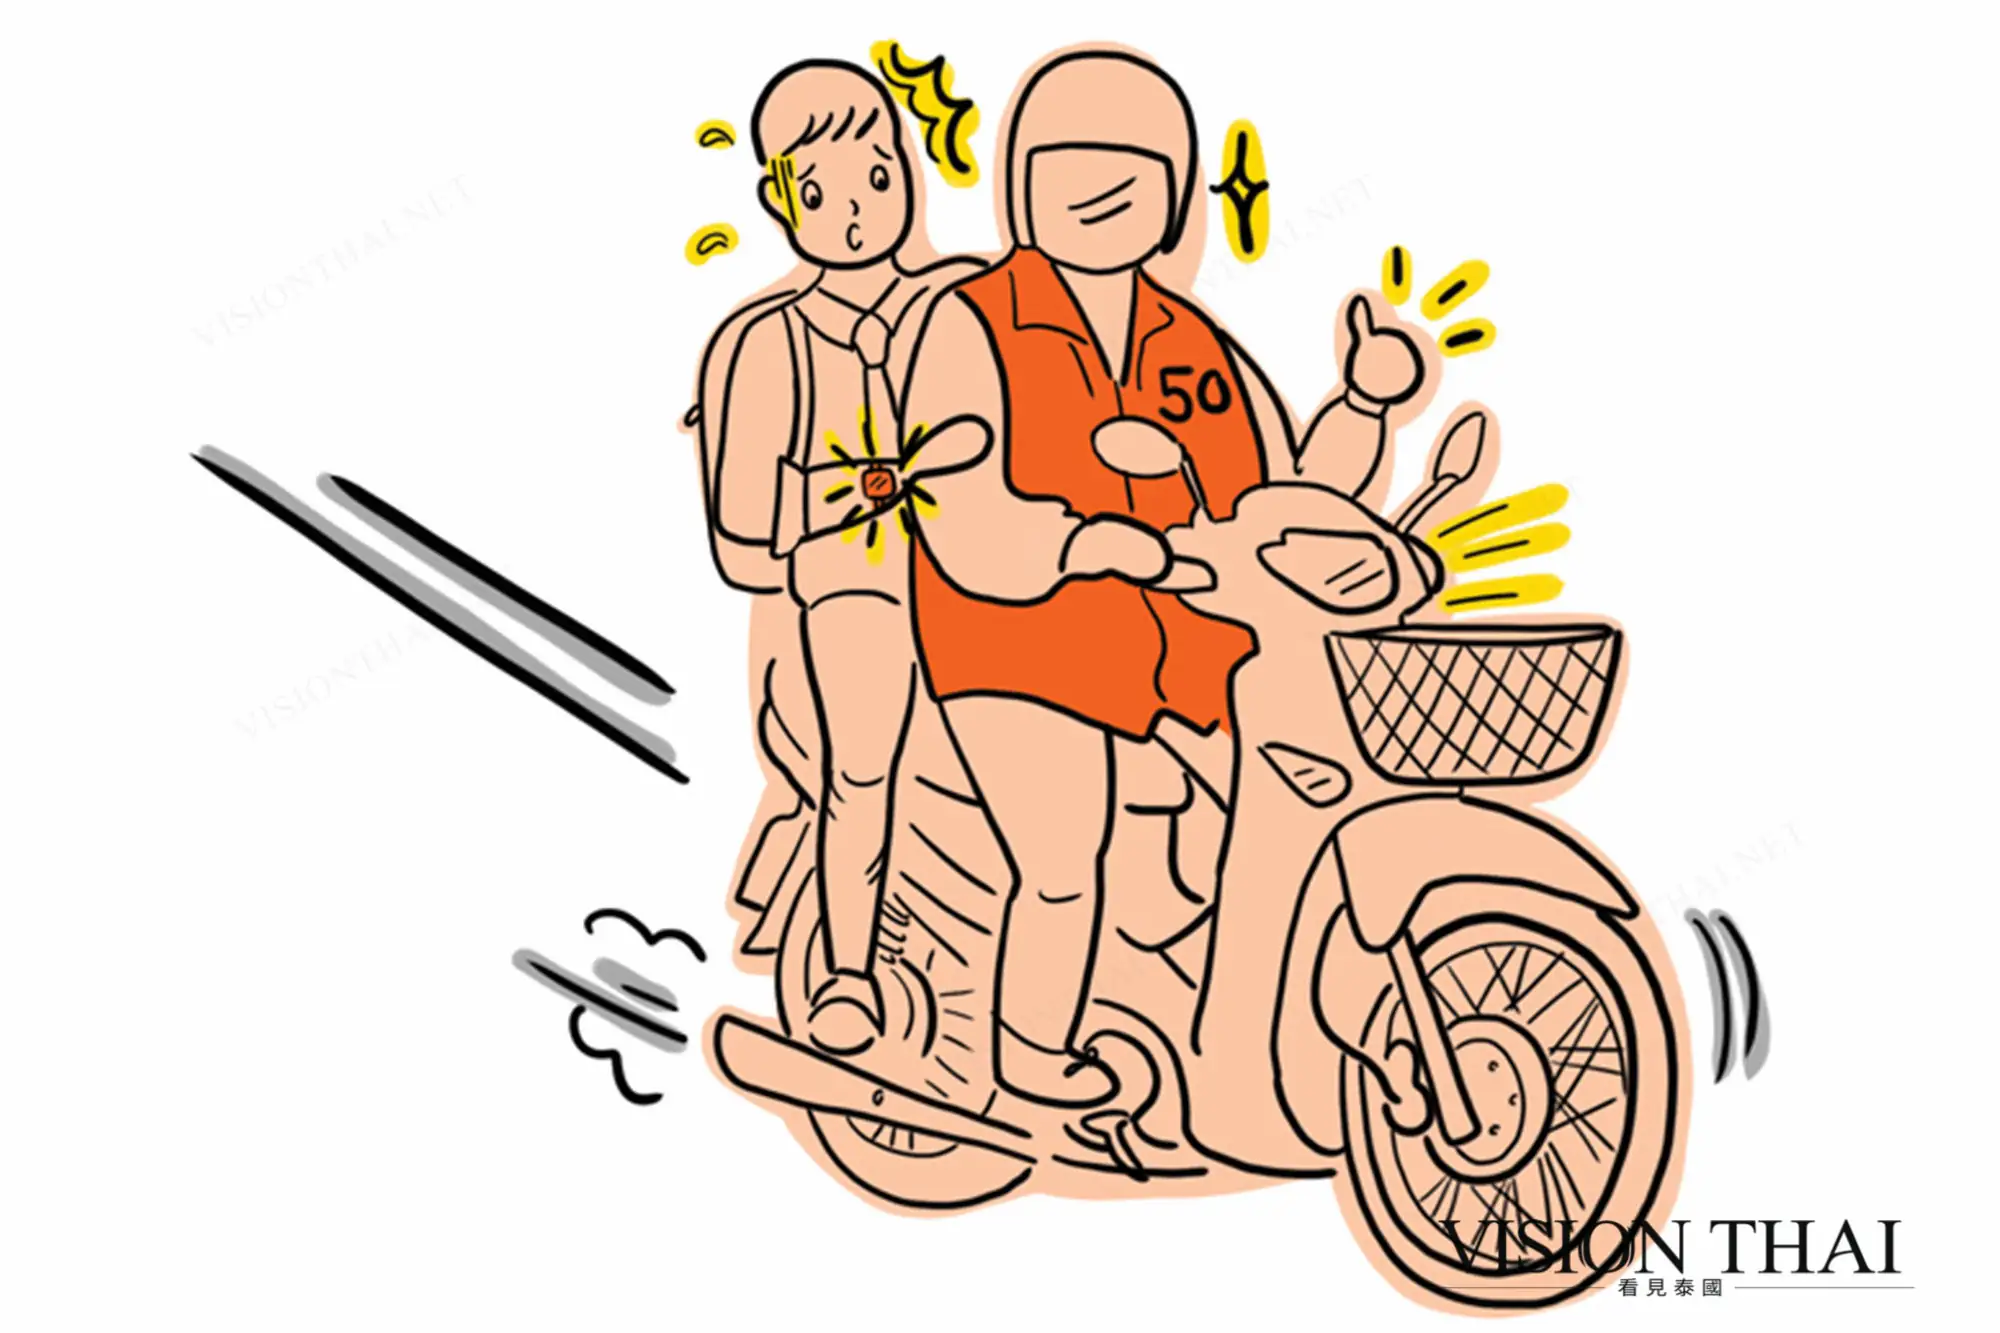 泰国交通工具多元，摩托计程车普遍常见 （VISION THAI 看见泰国）